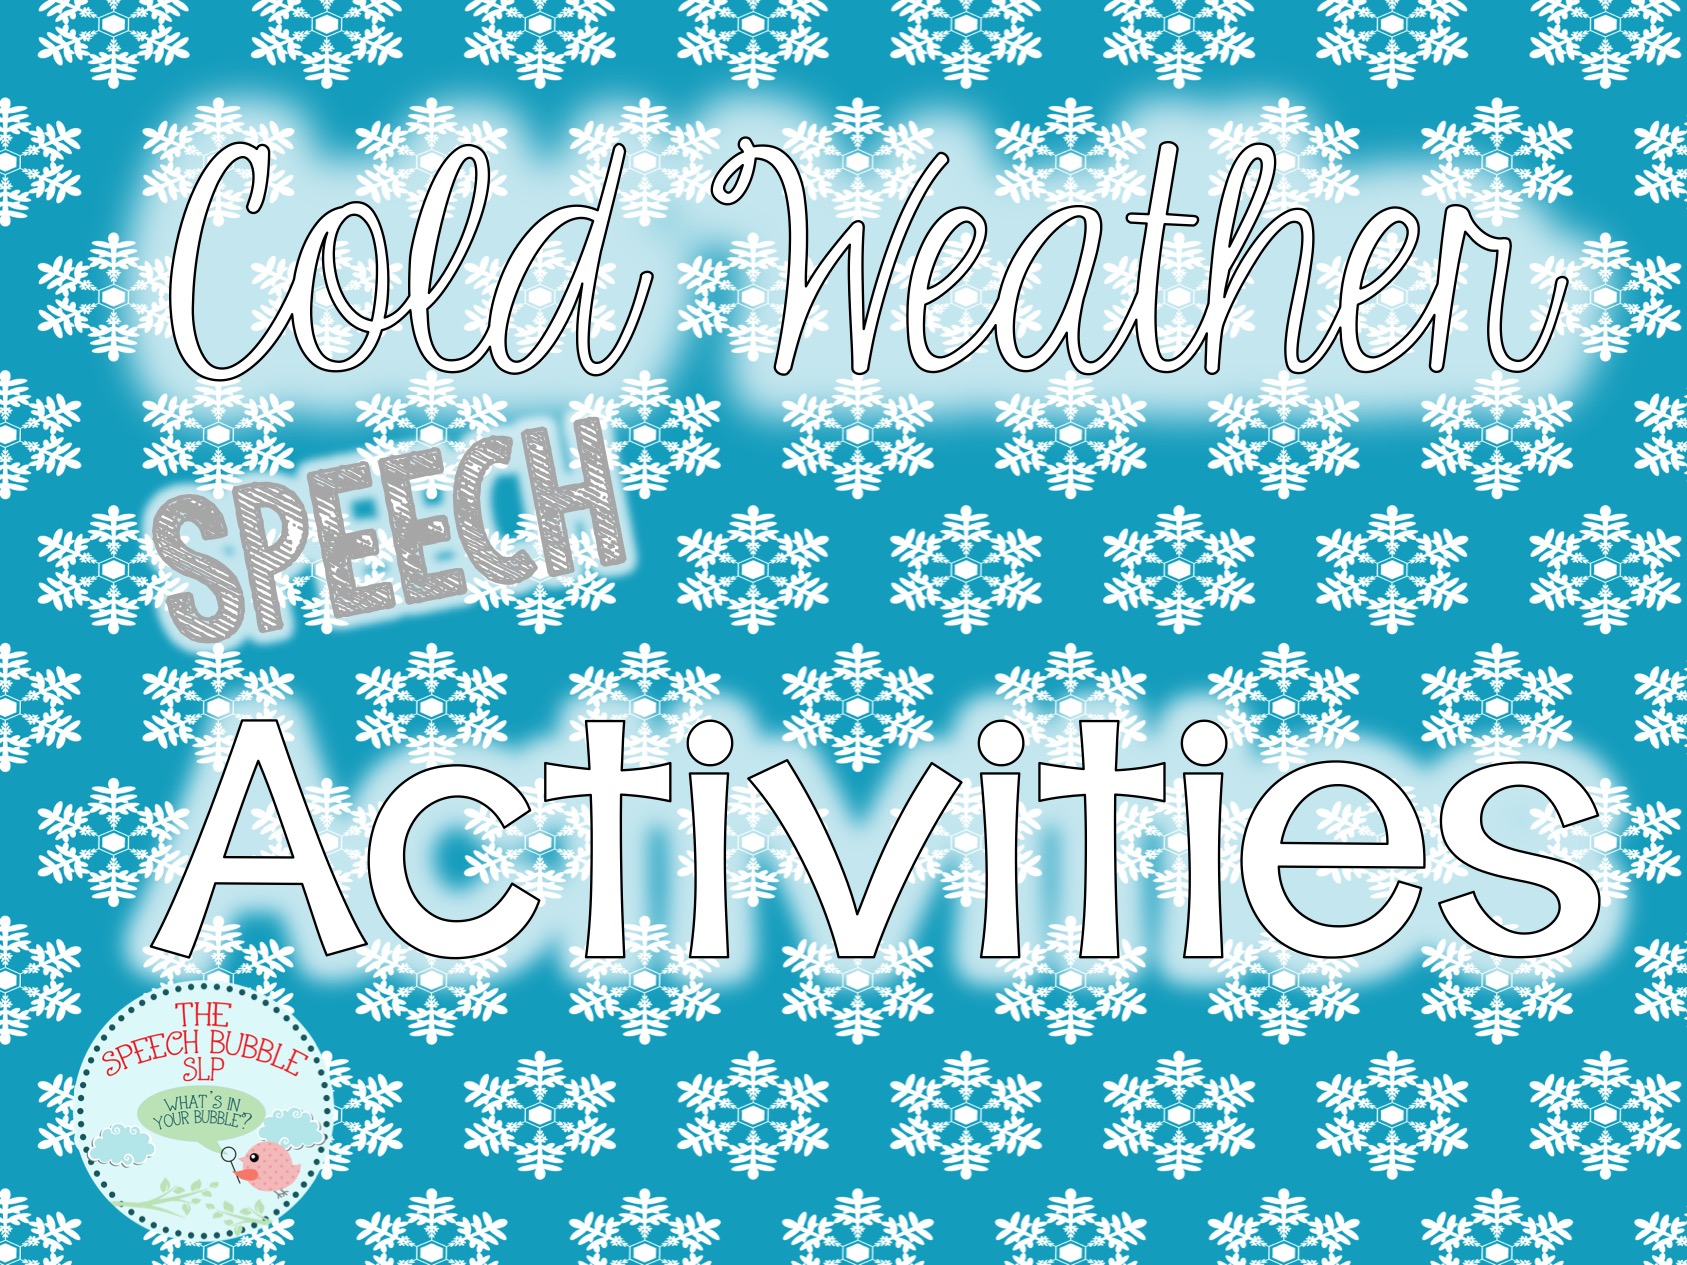 Cold Weather Speech Activities